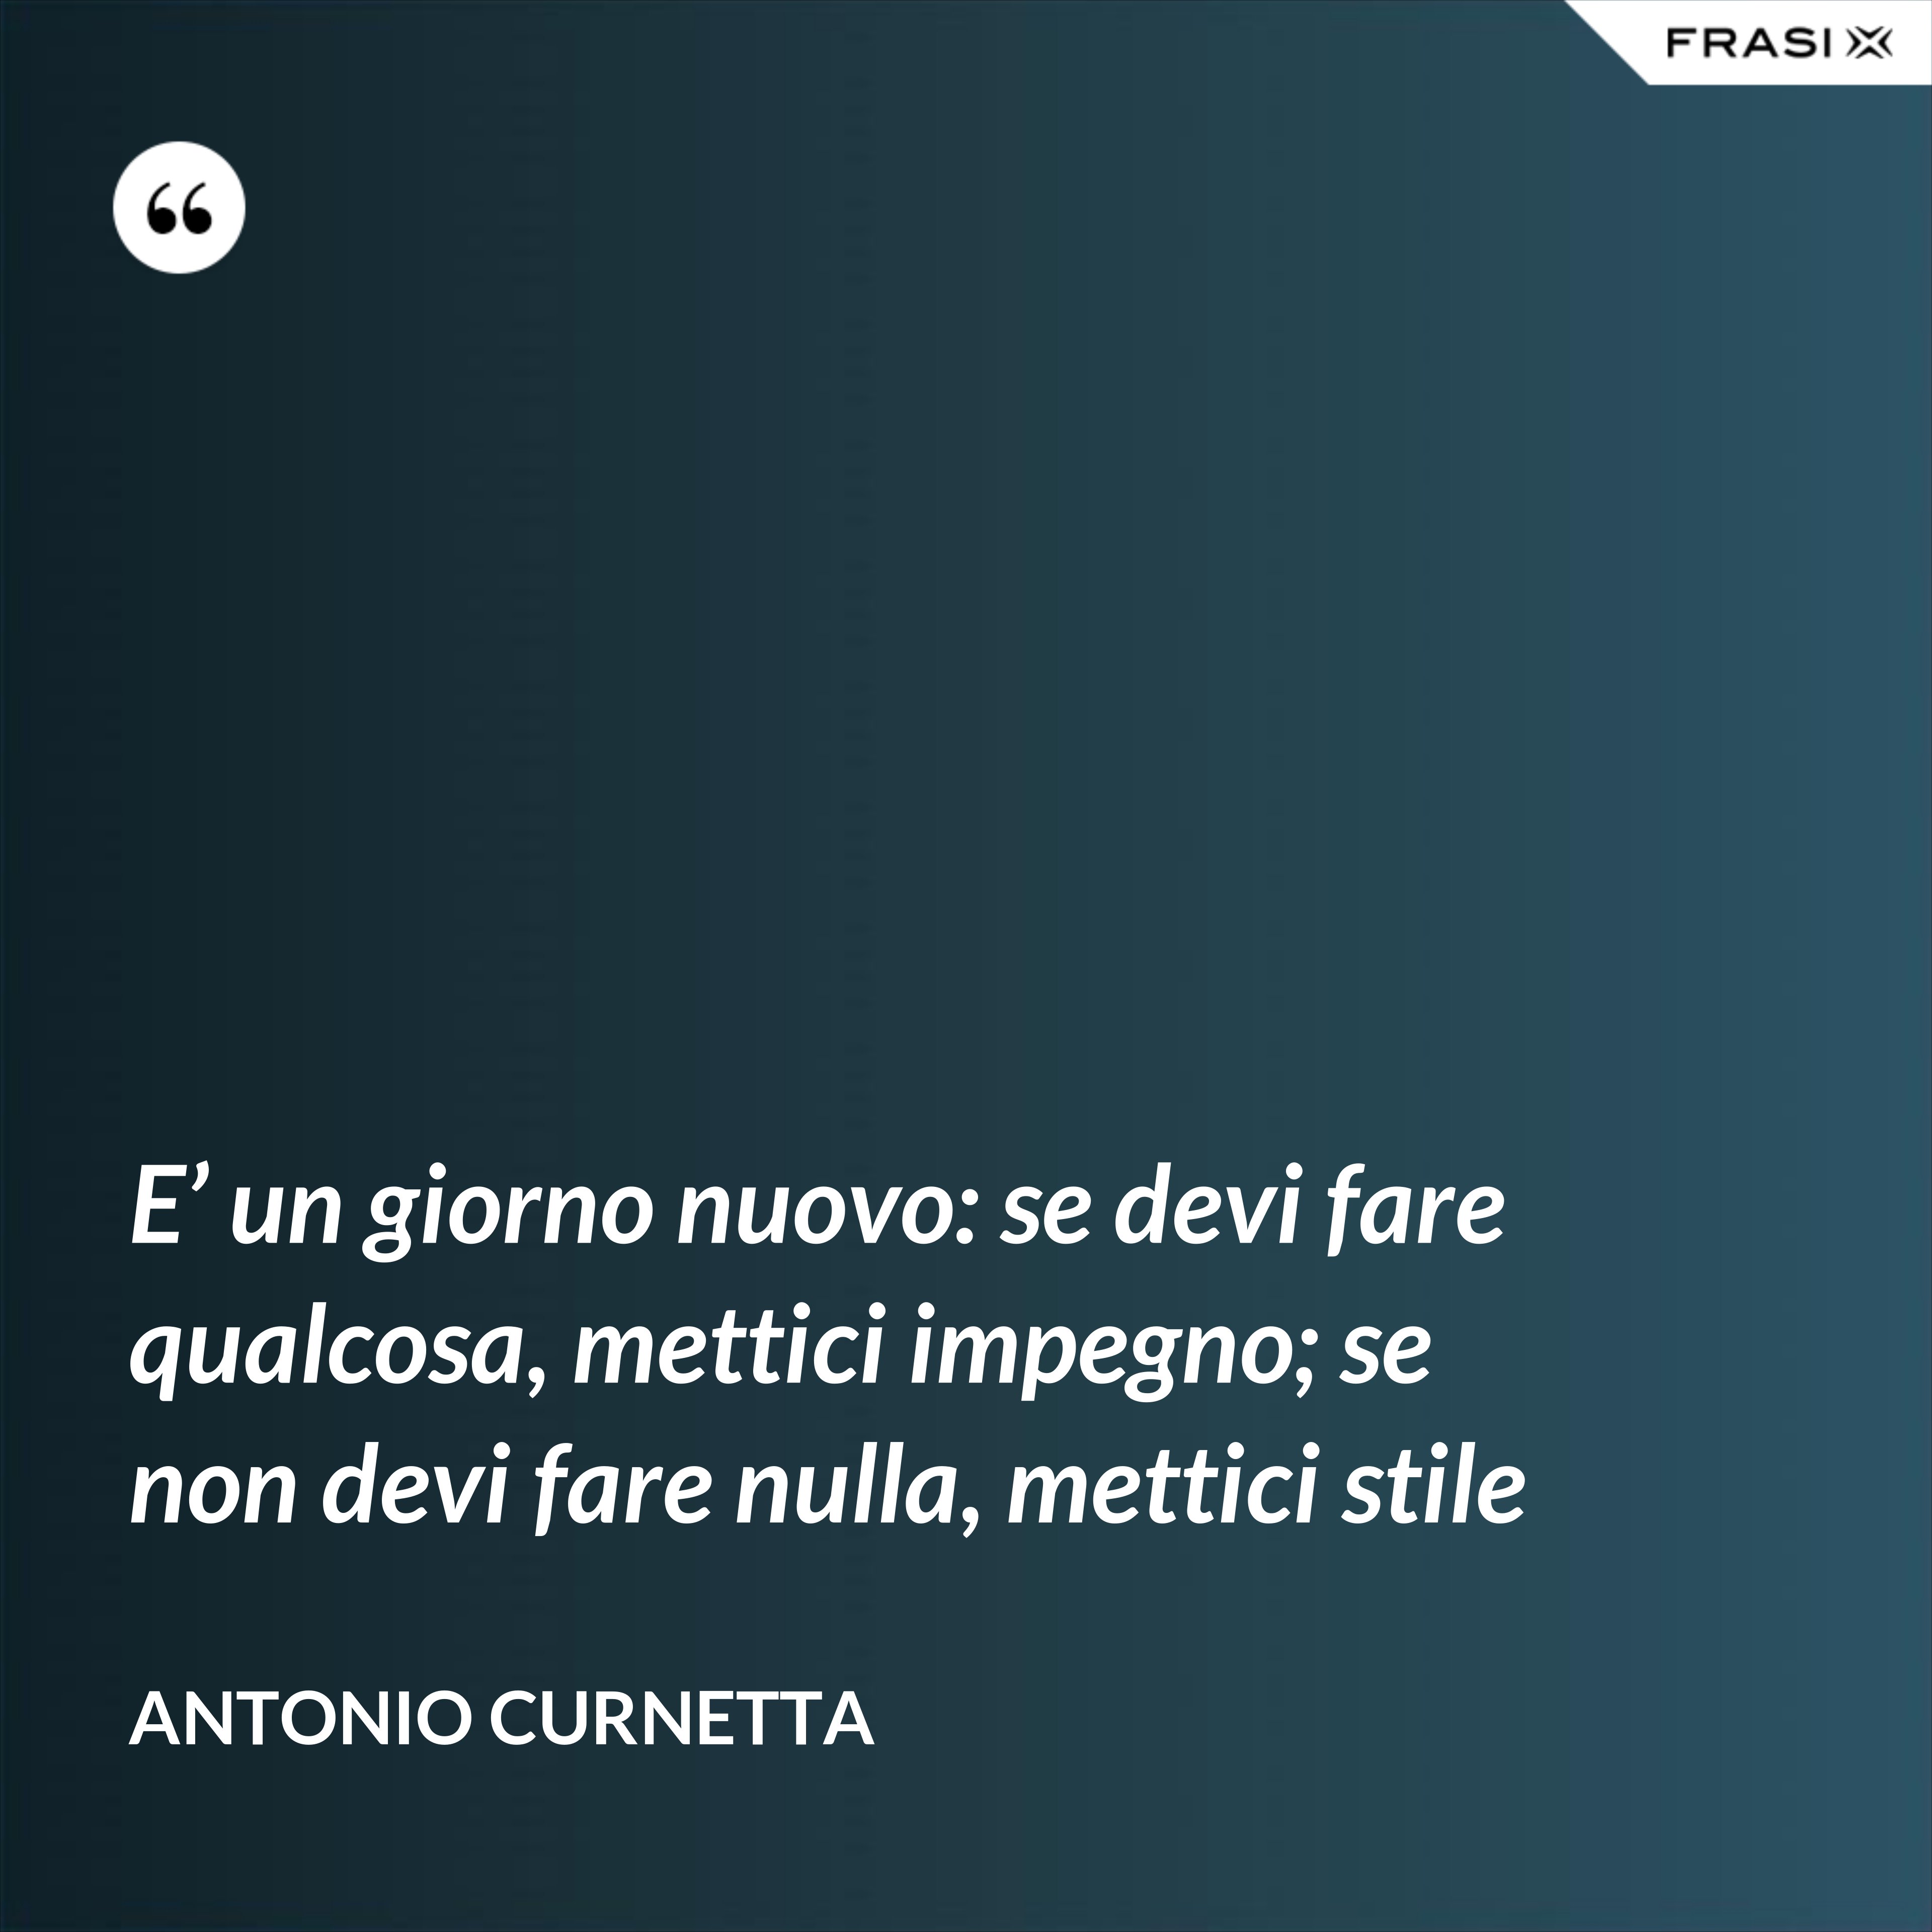 E’ un giorno nuovo: se devi fare qualcosa, mettici impegno; se non devi fare nulla, mettici stile - Antonio Curnetta